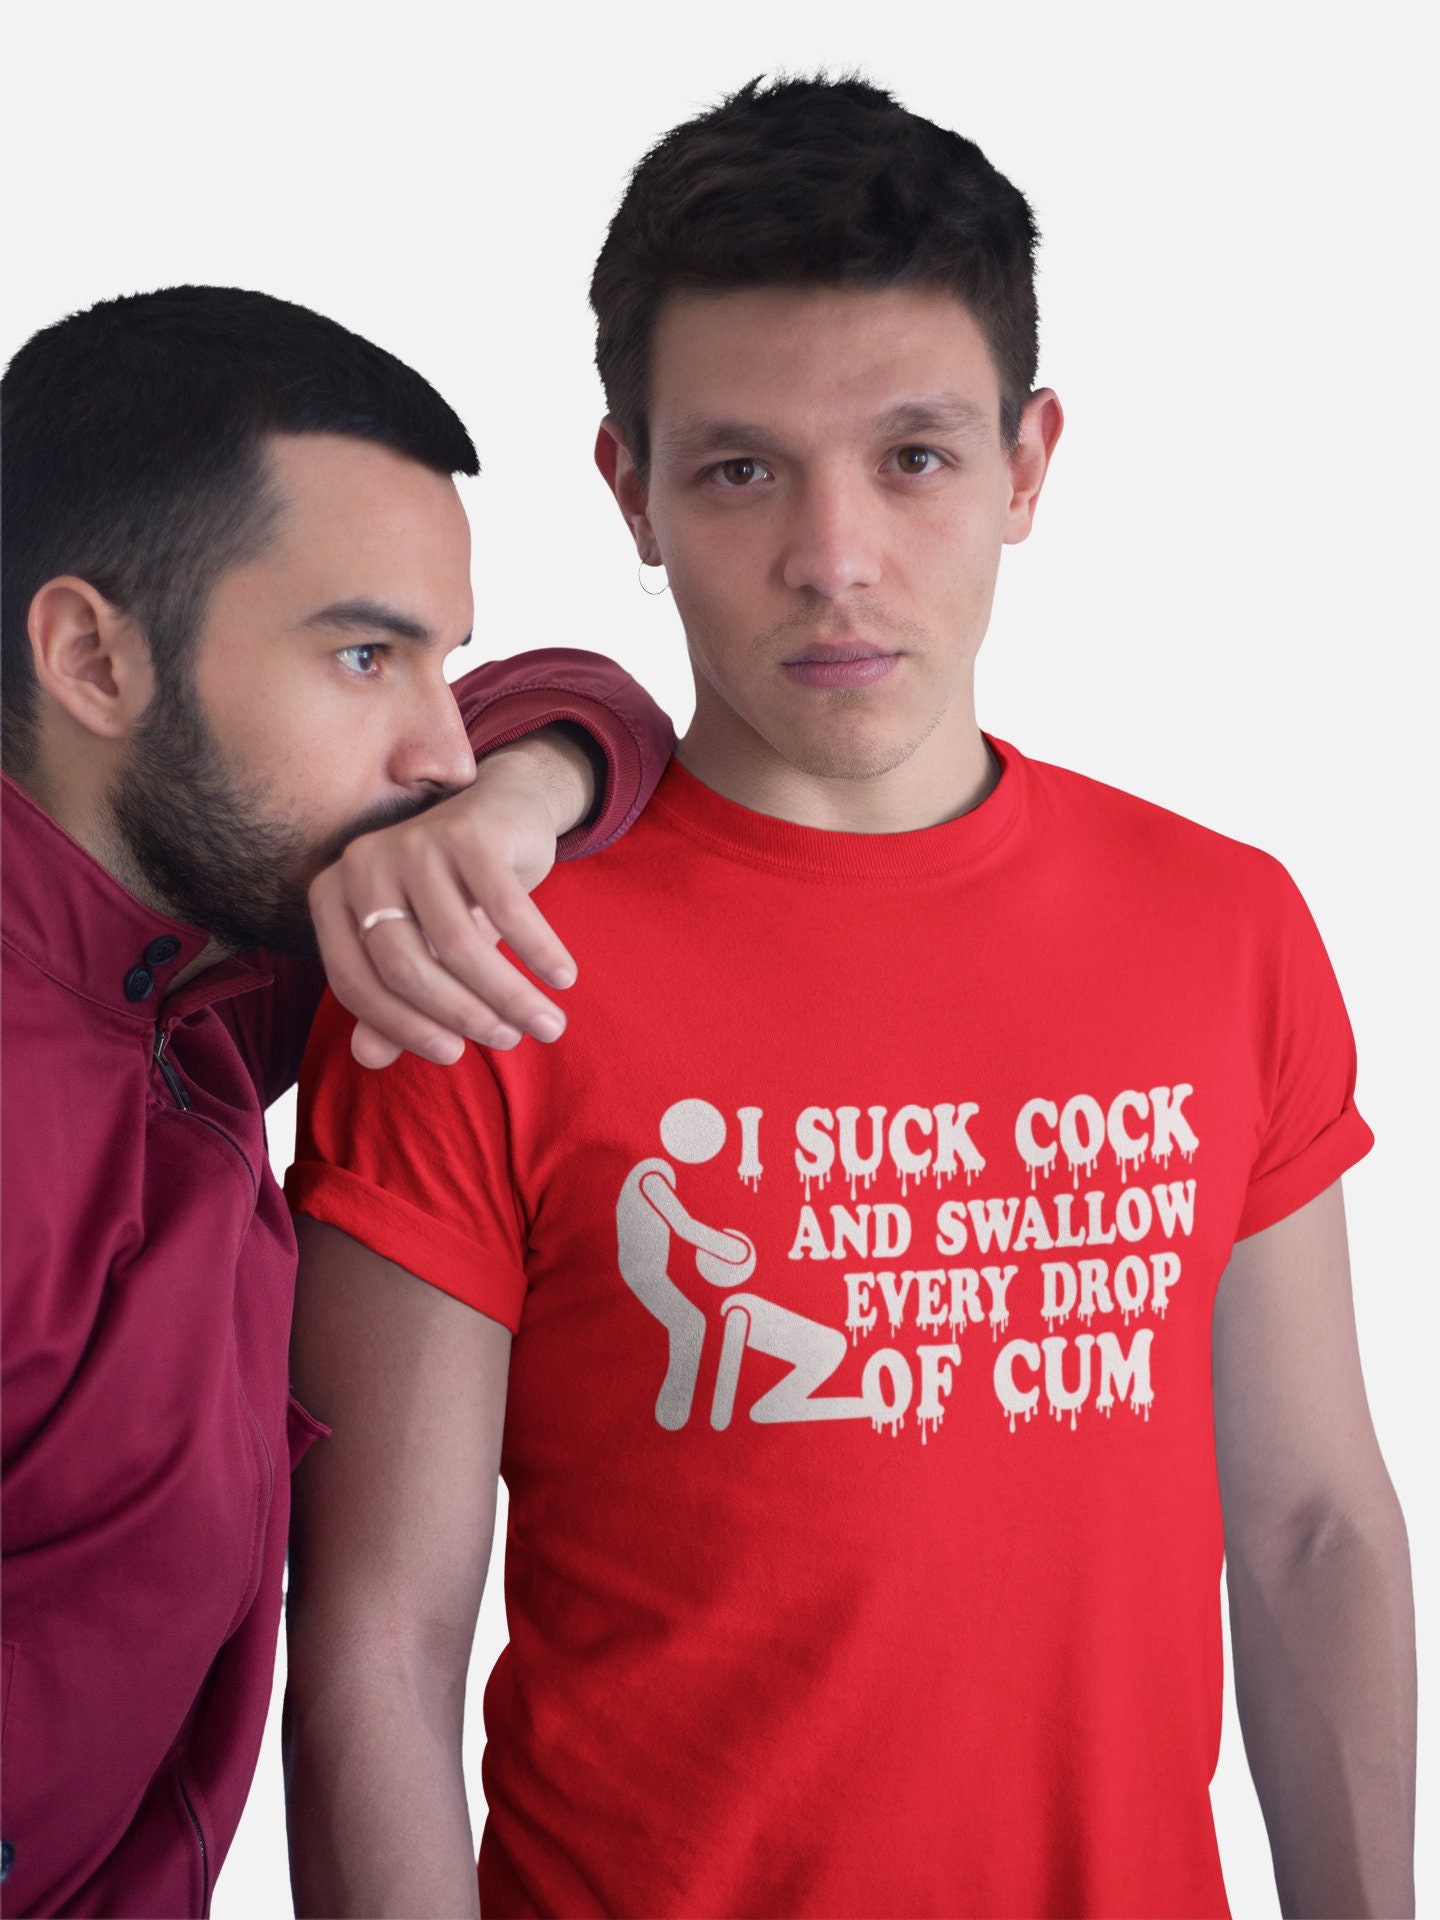 I Love Gay Sex Shirt - Etsy New Zealand